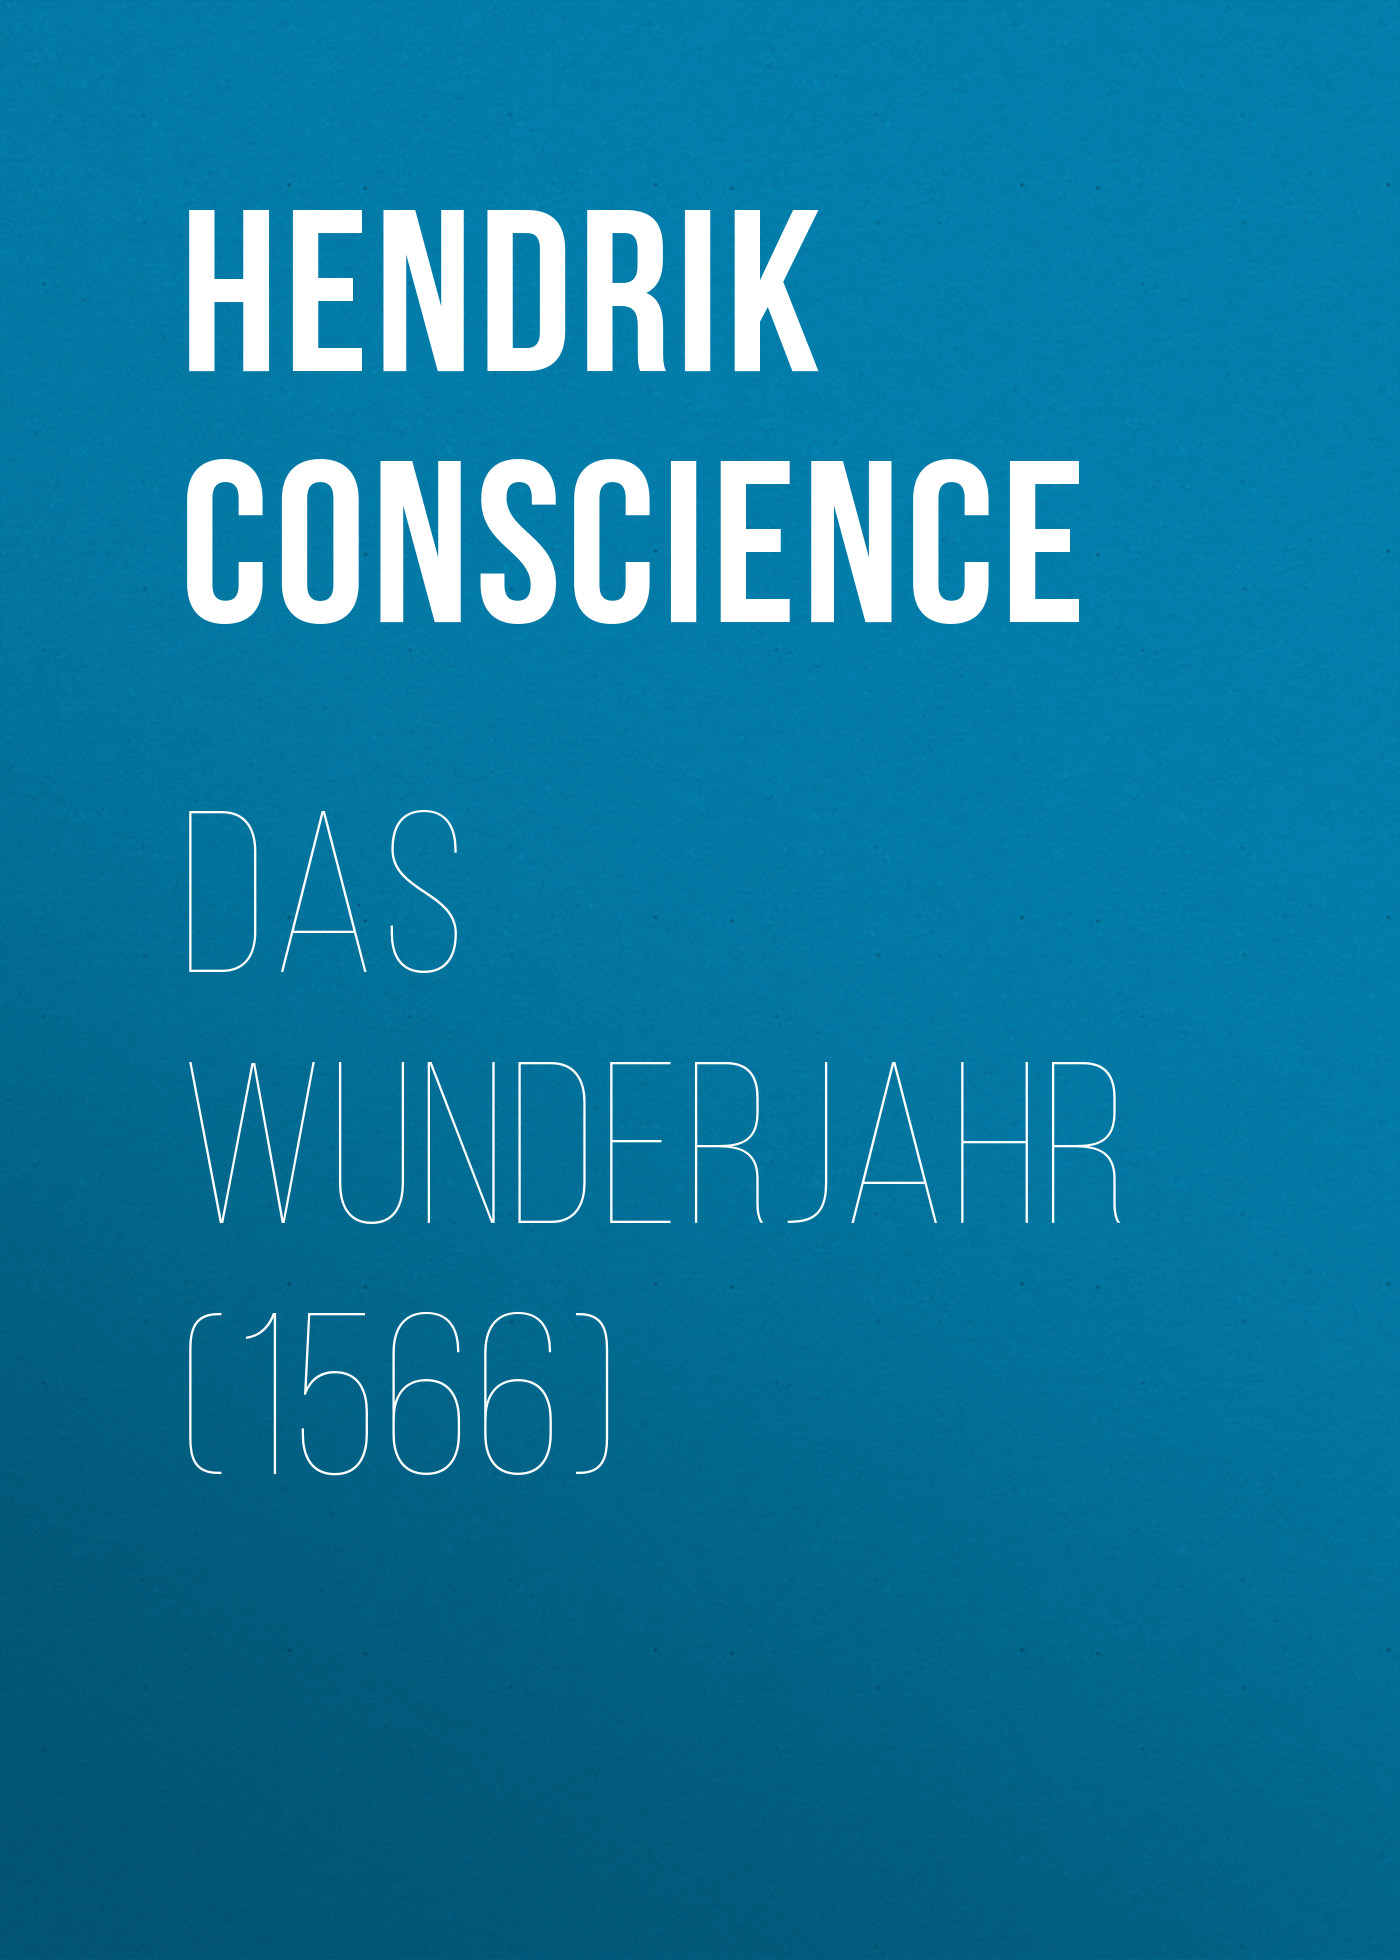 Книга Das Wunderjahr (1566) из серии , созданная Hendrik Conscience, может относится к жанру Зарубежная классика. Стоимость электронной книги Das Wunderjahr (1566) с идентификатором 48633428 составляет 0 руб.